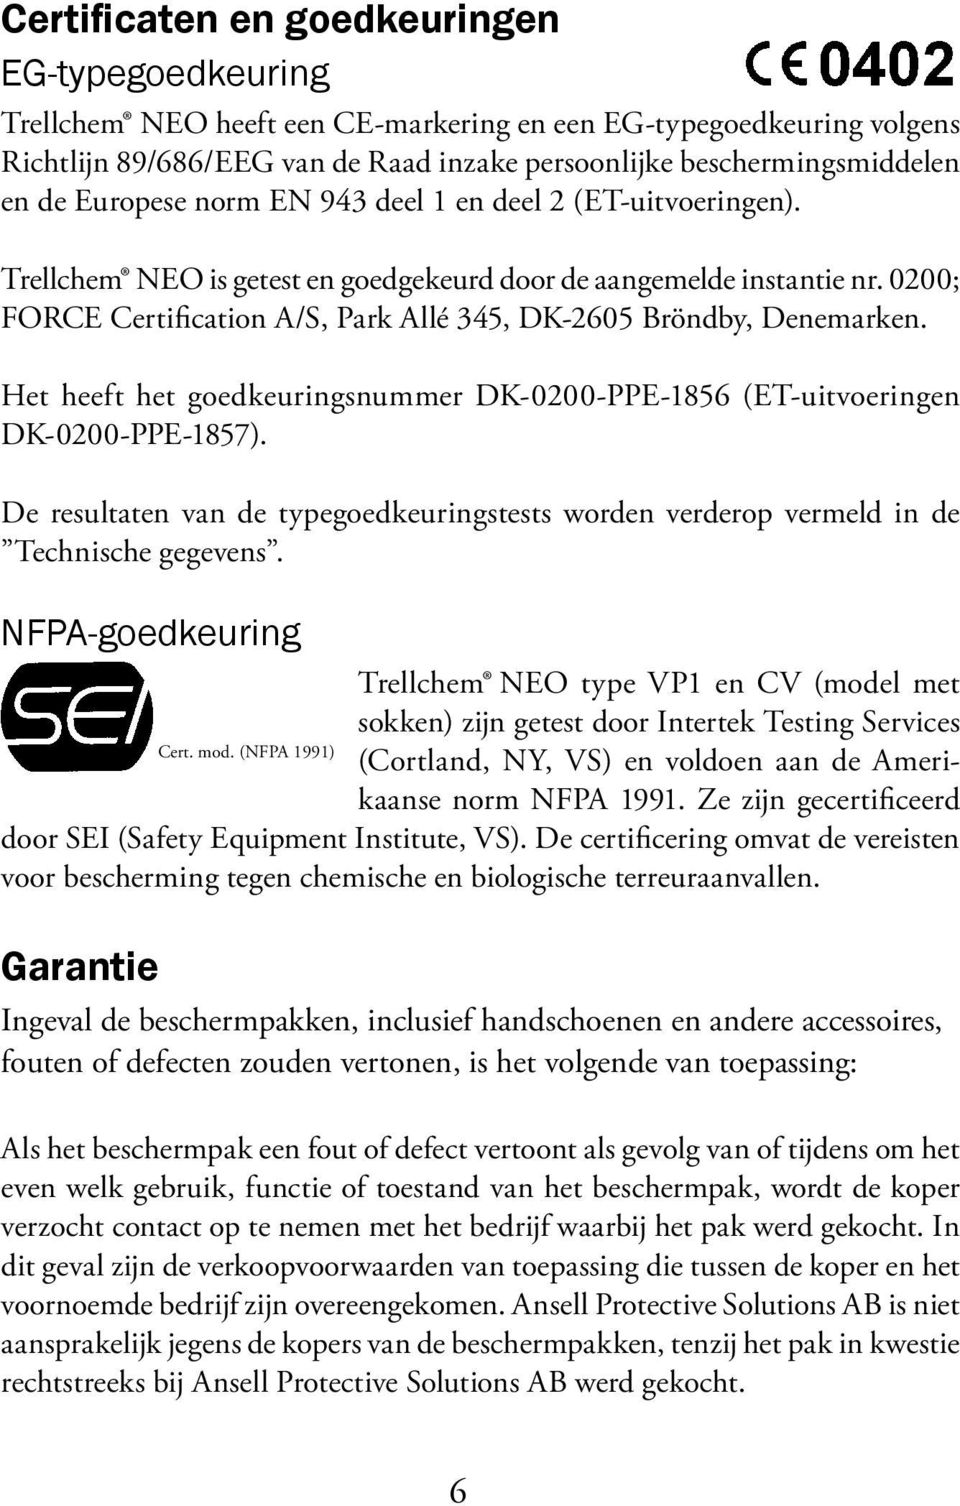 0200; FORCE Certification A/S, Park Allé 345, DK-2605 Bröndby, Denemarken. Het heeft het goedkeuringsnummer DK-0200-PPE-1856 (ET-uitvoeringen DK-0200-PPE-1857).